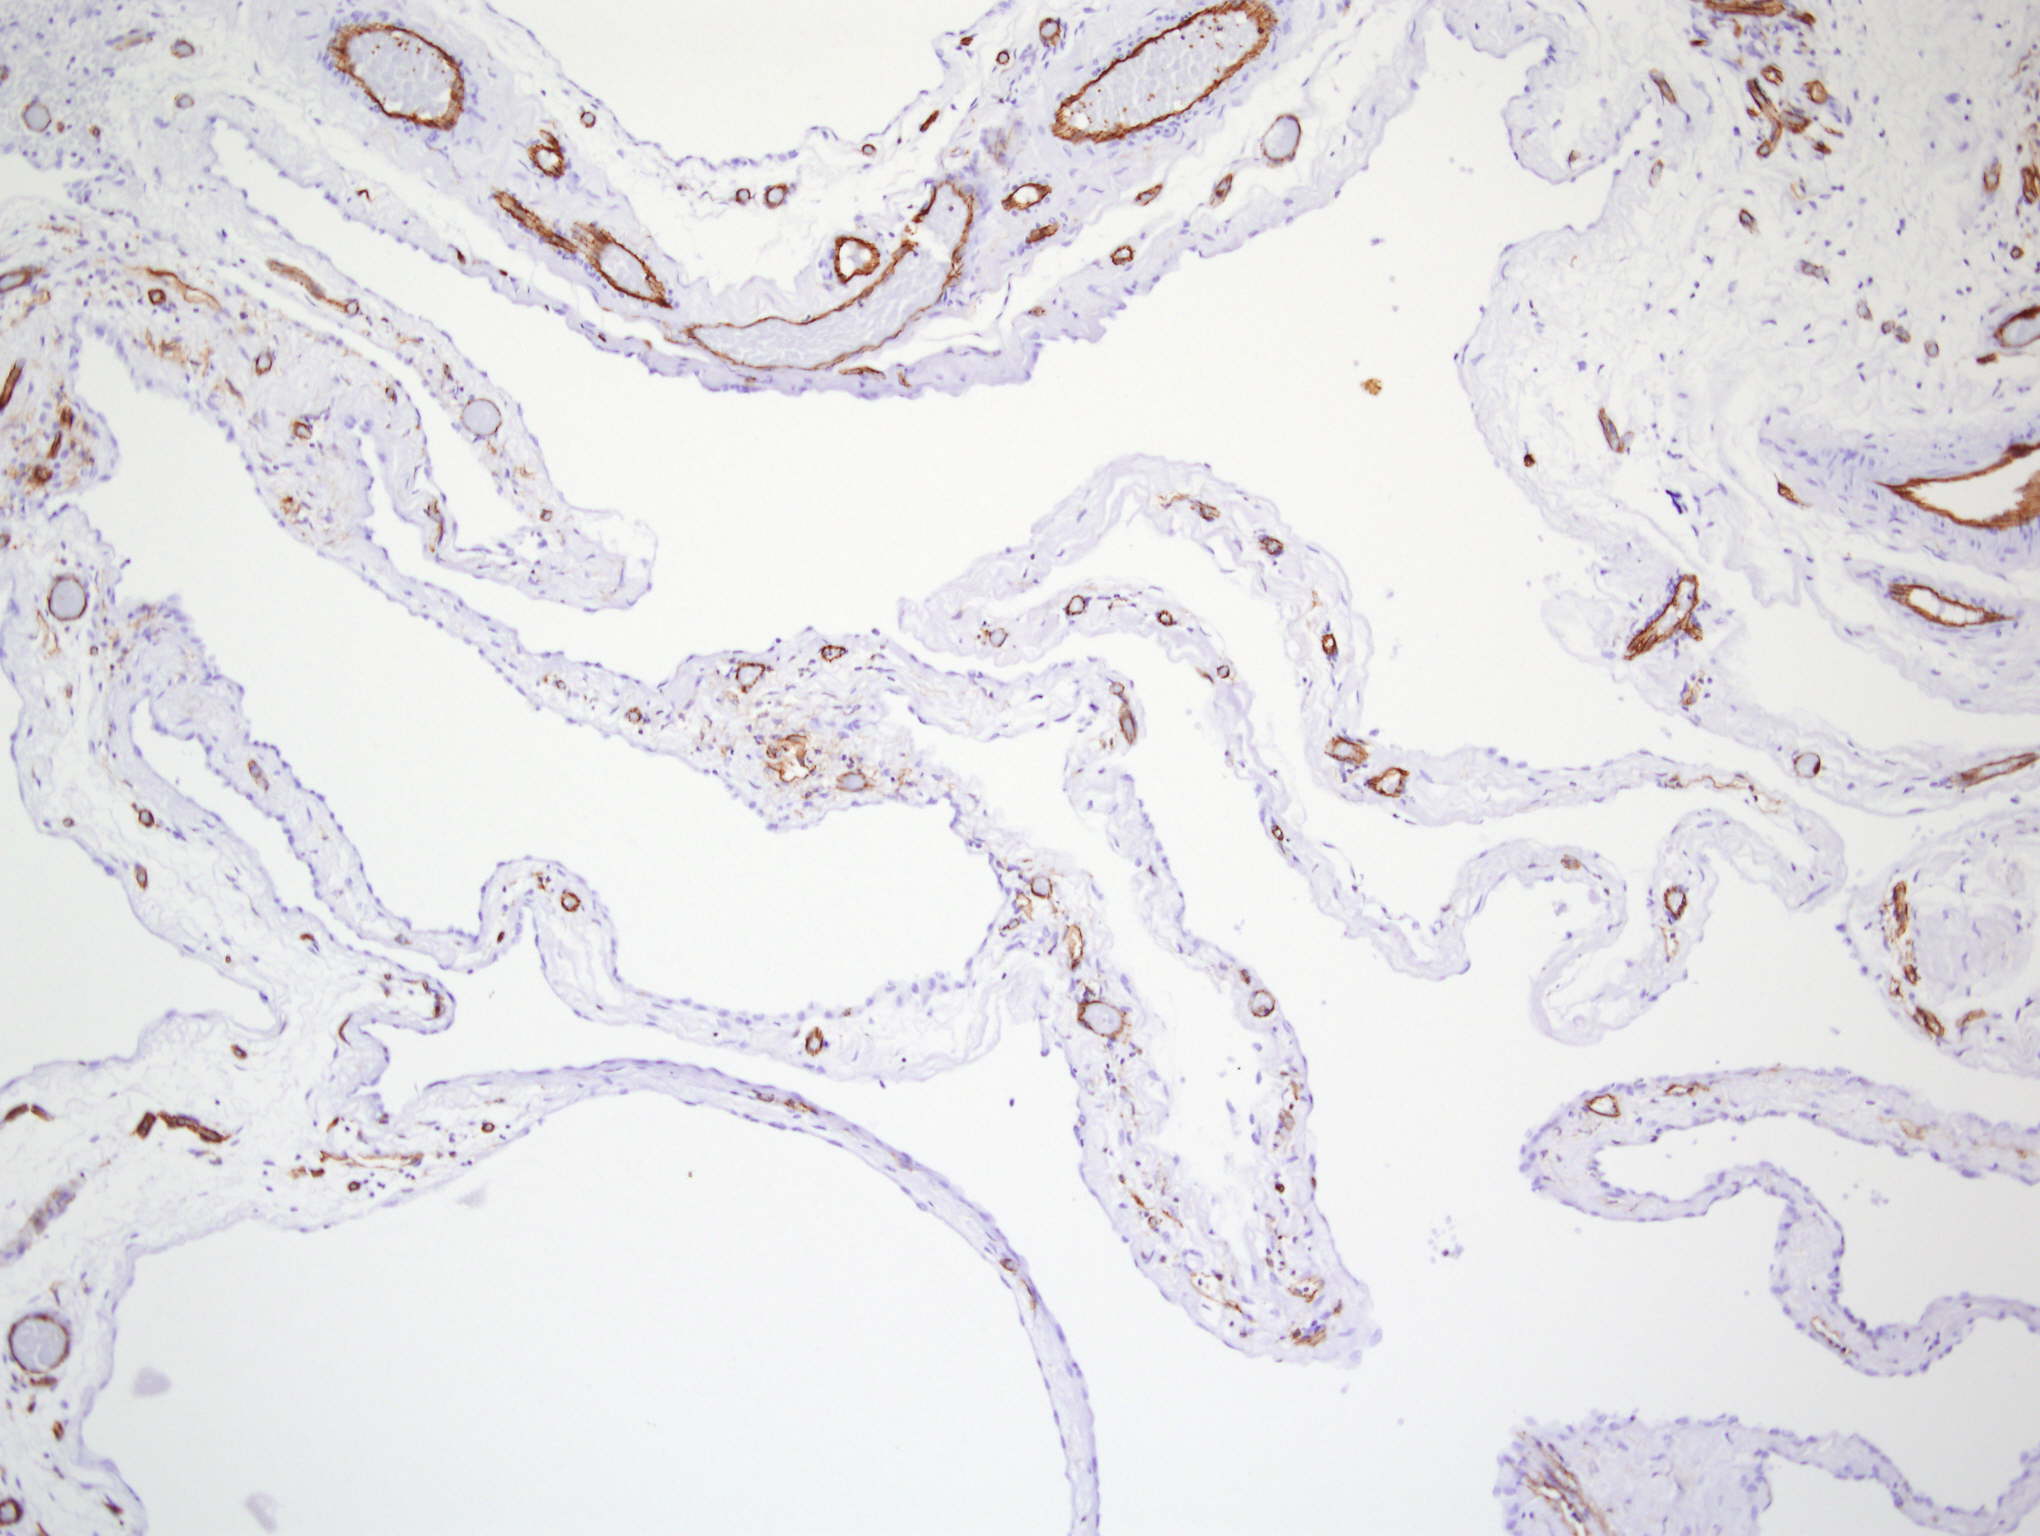 apoptosis in mesothelioma cells